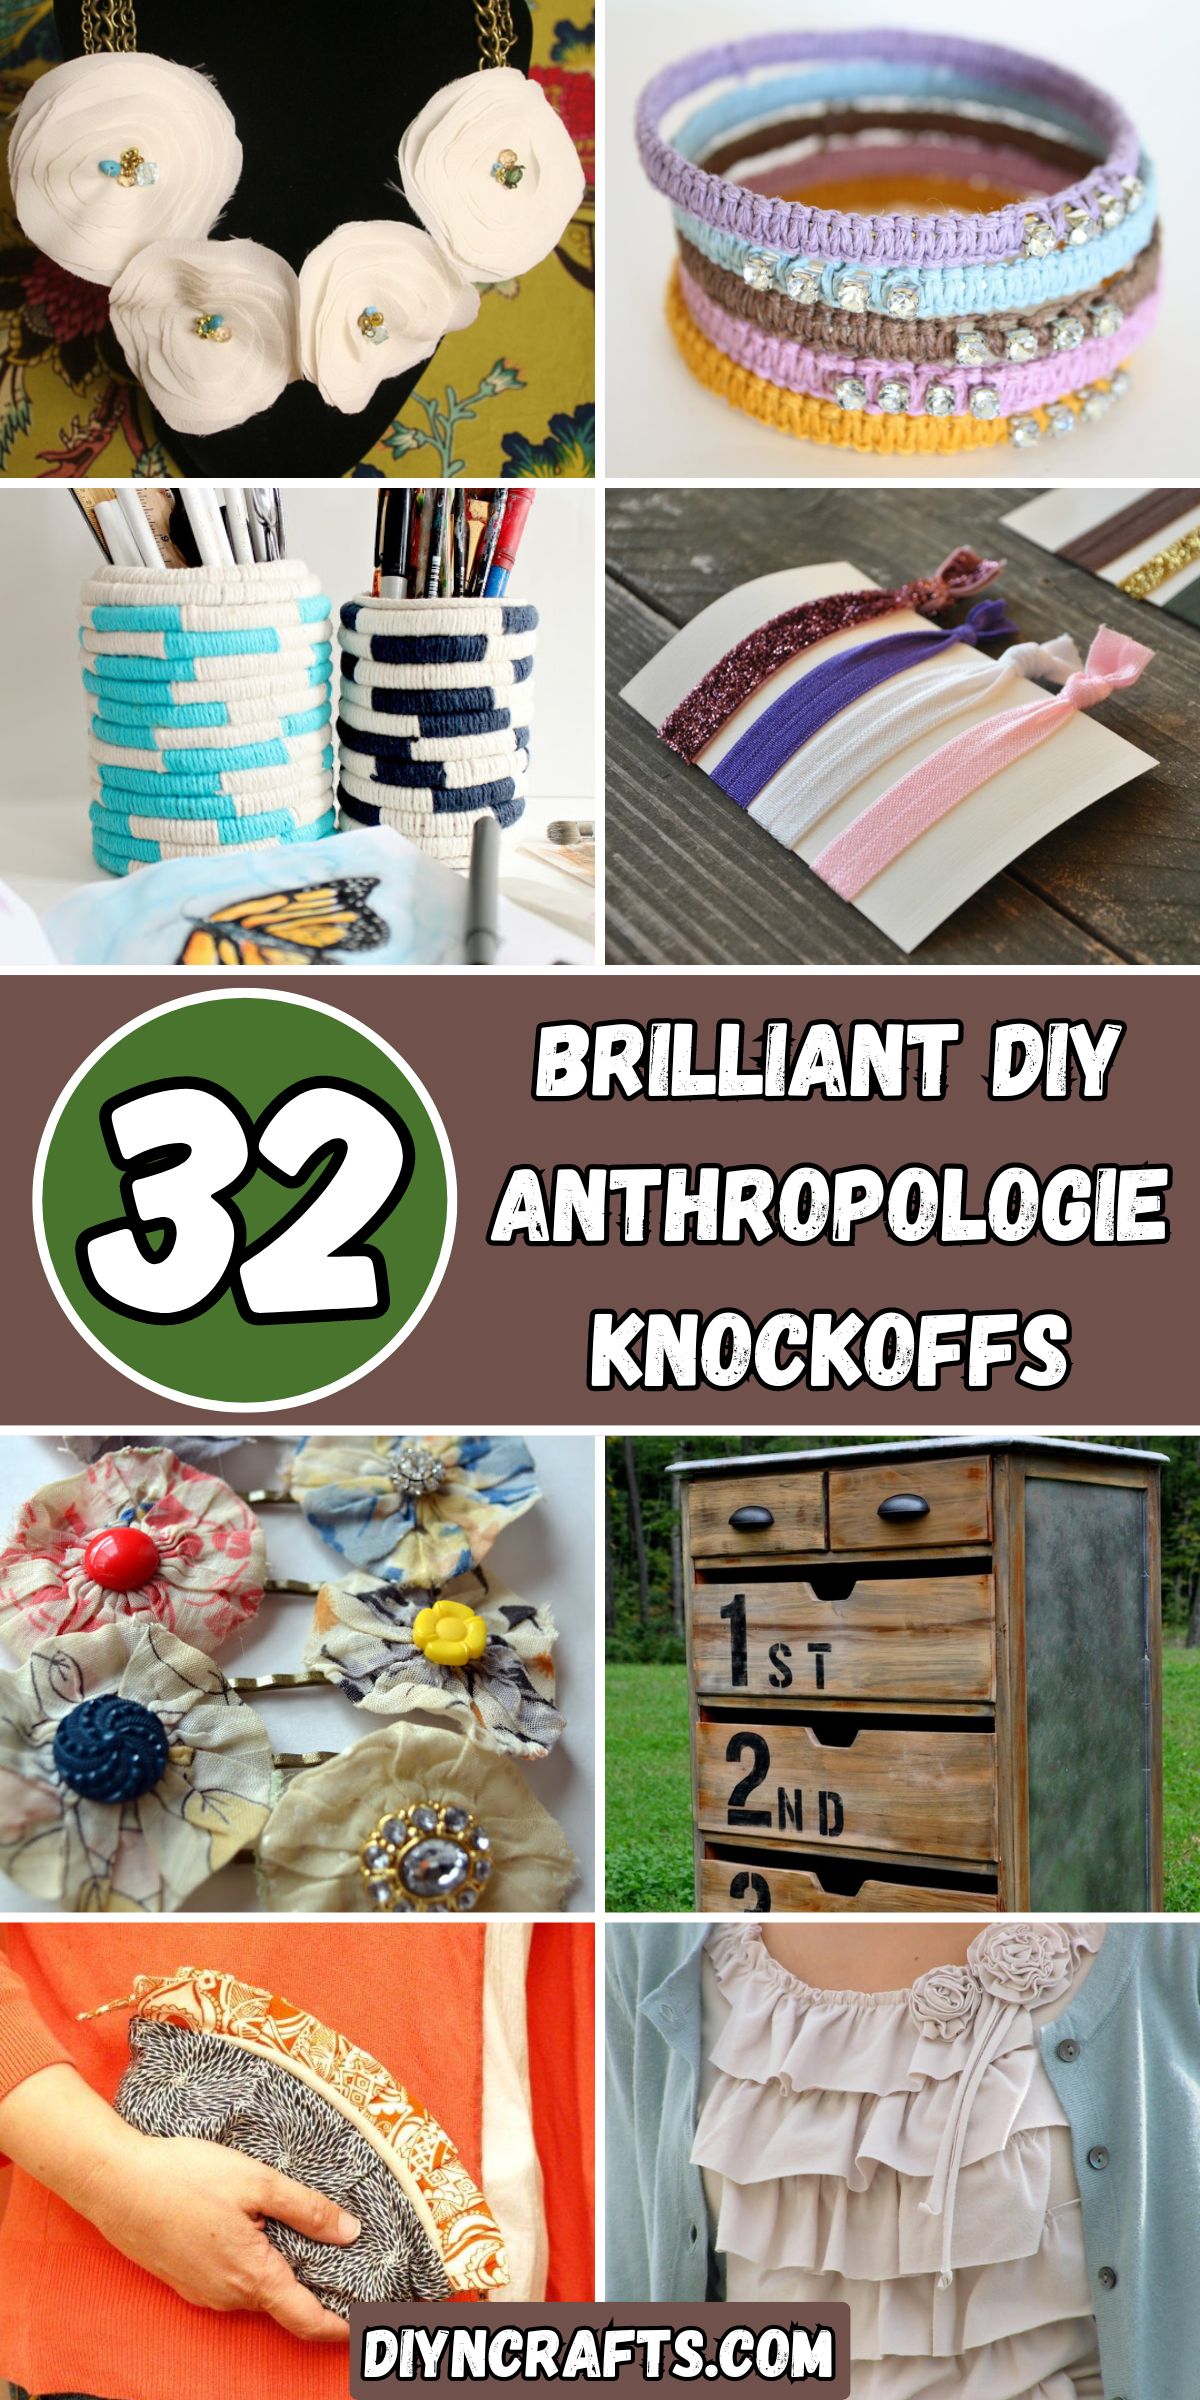 32 Brilliant DIY Anthropologie Knockoffs collage.